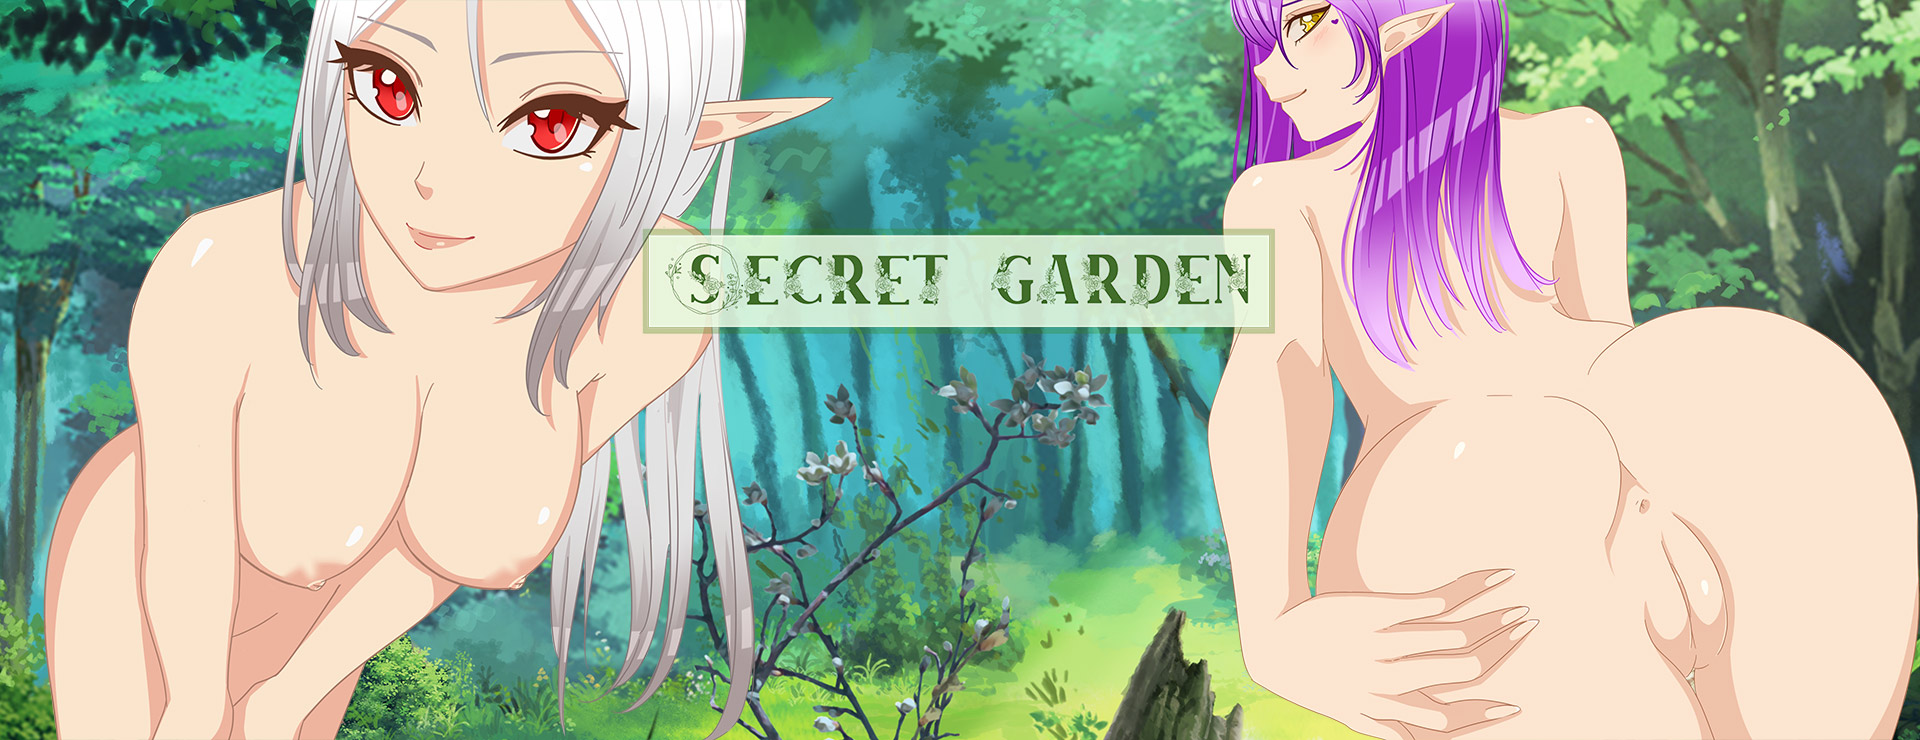 Secret Garden - Casual Game